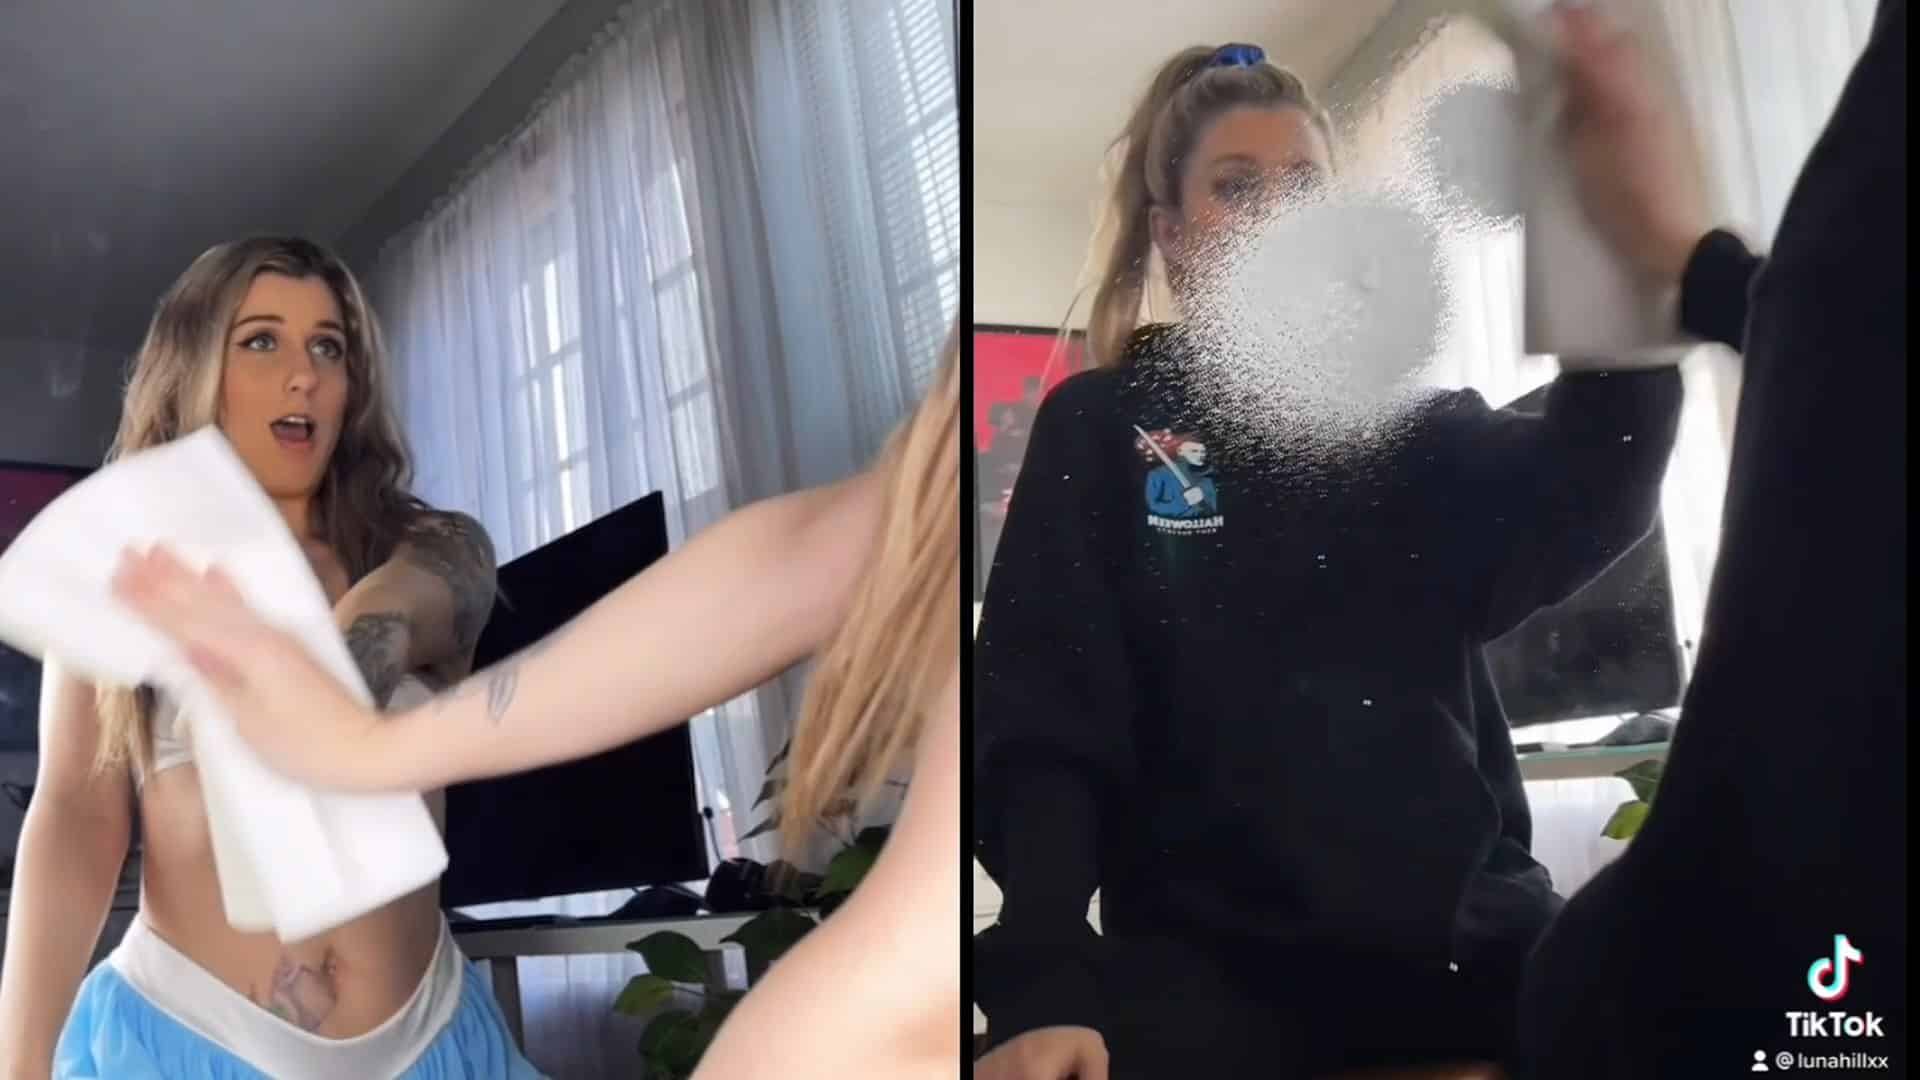 Vidéo censurée par Tiktok : La blonde joue avec une miroir coquin